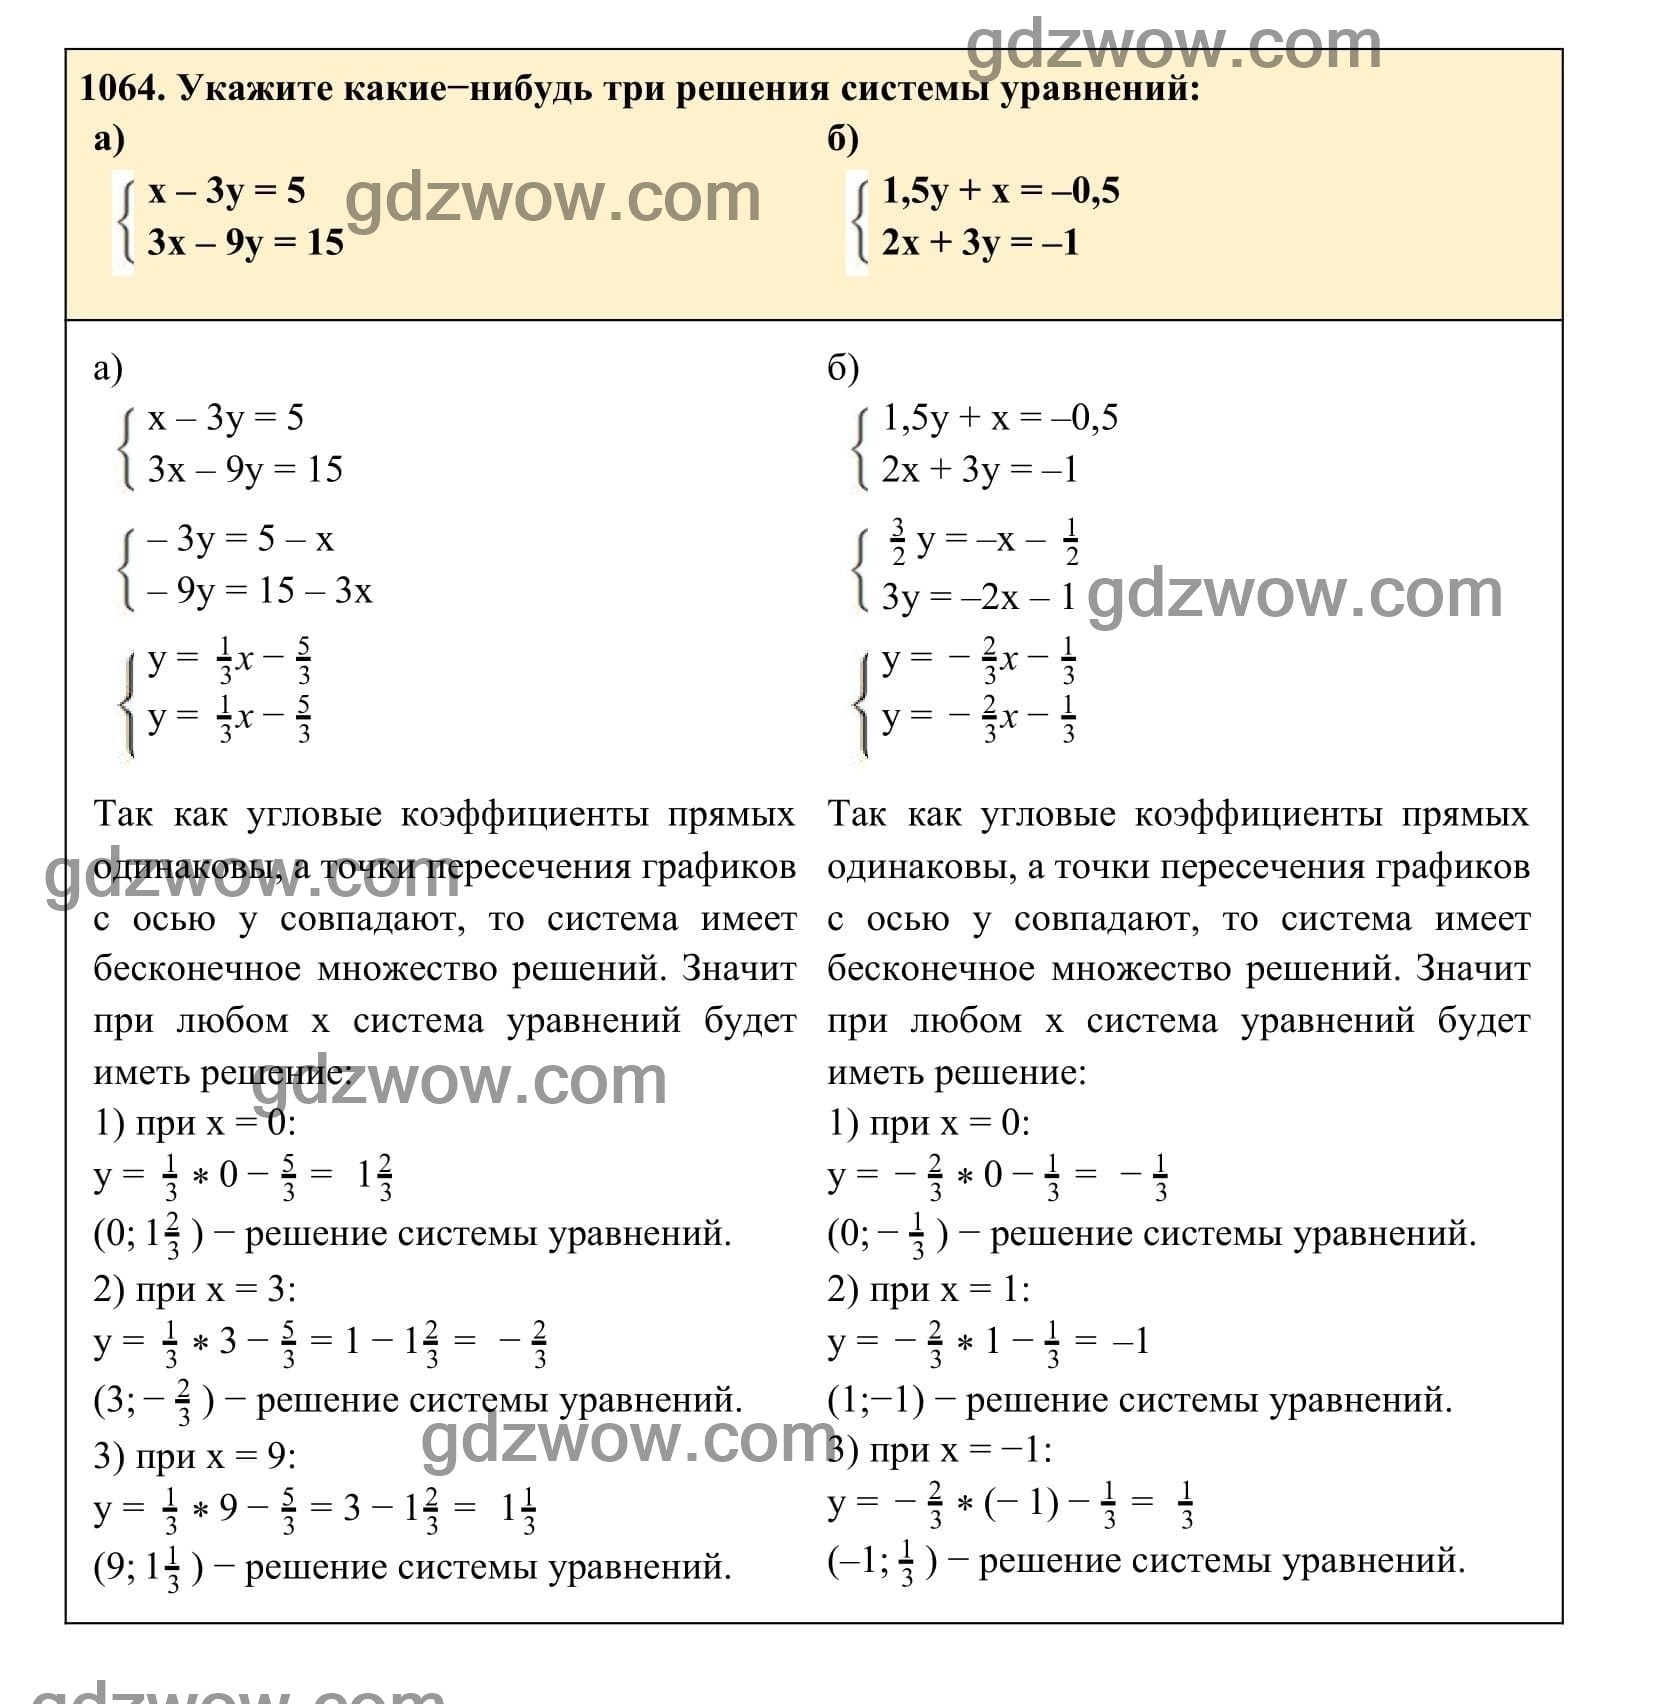 Упражнение 1064 - ГДЗ по Алгебре 7 класс Учебник Макарычев (решебник) - GDZwow